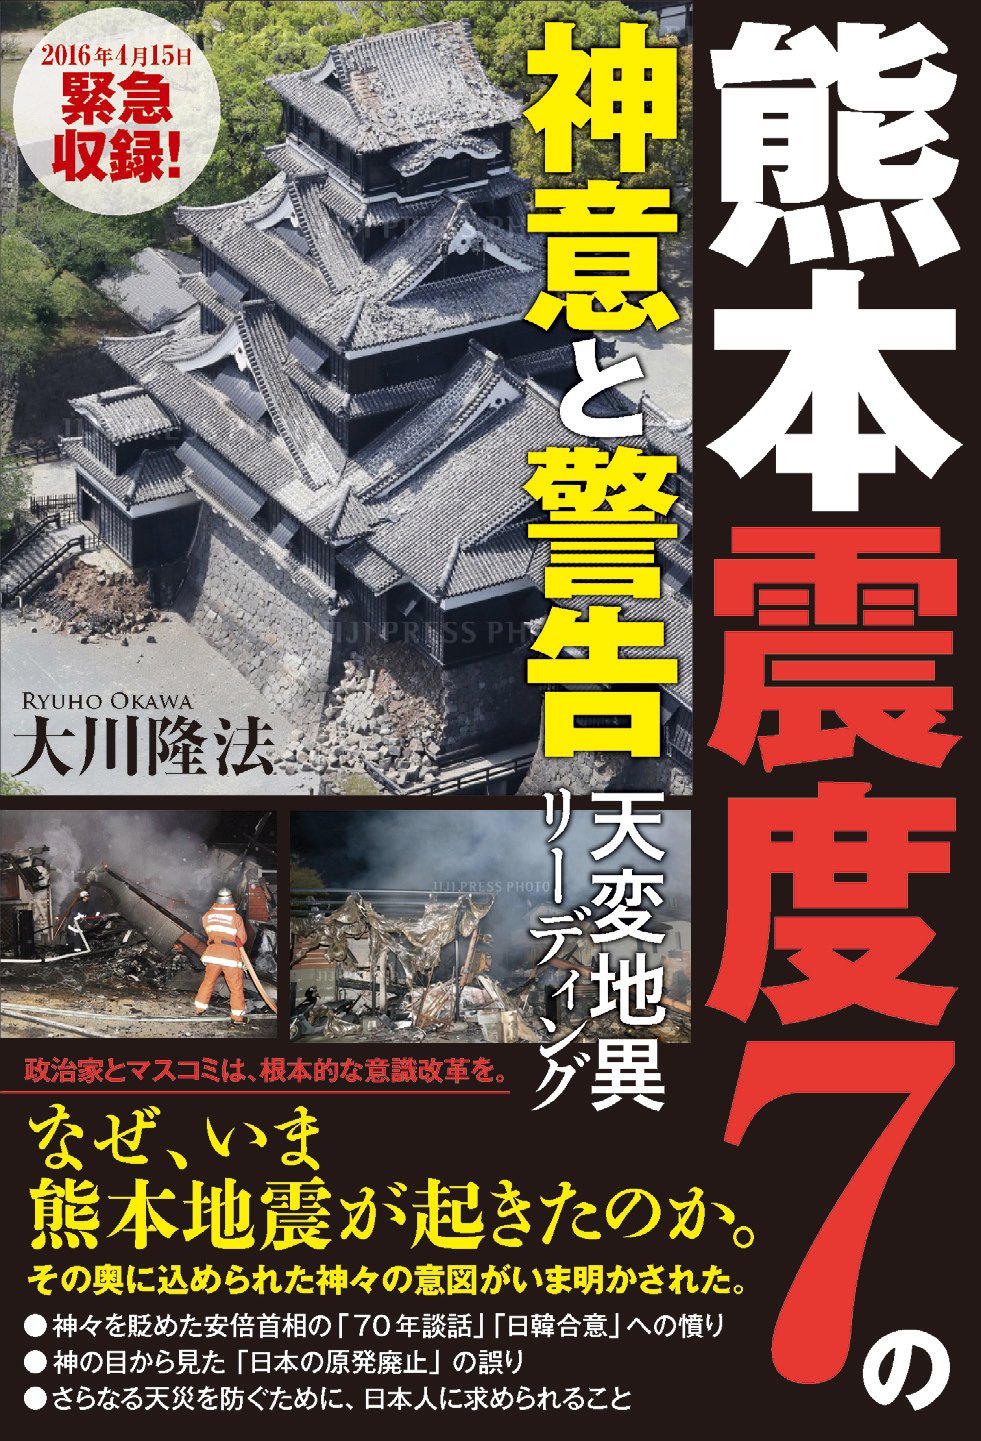 熊本地震、もう本になる